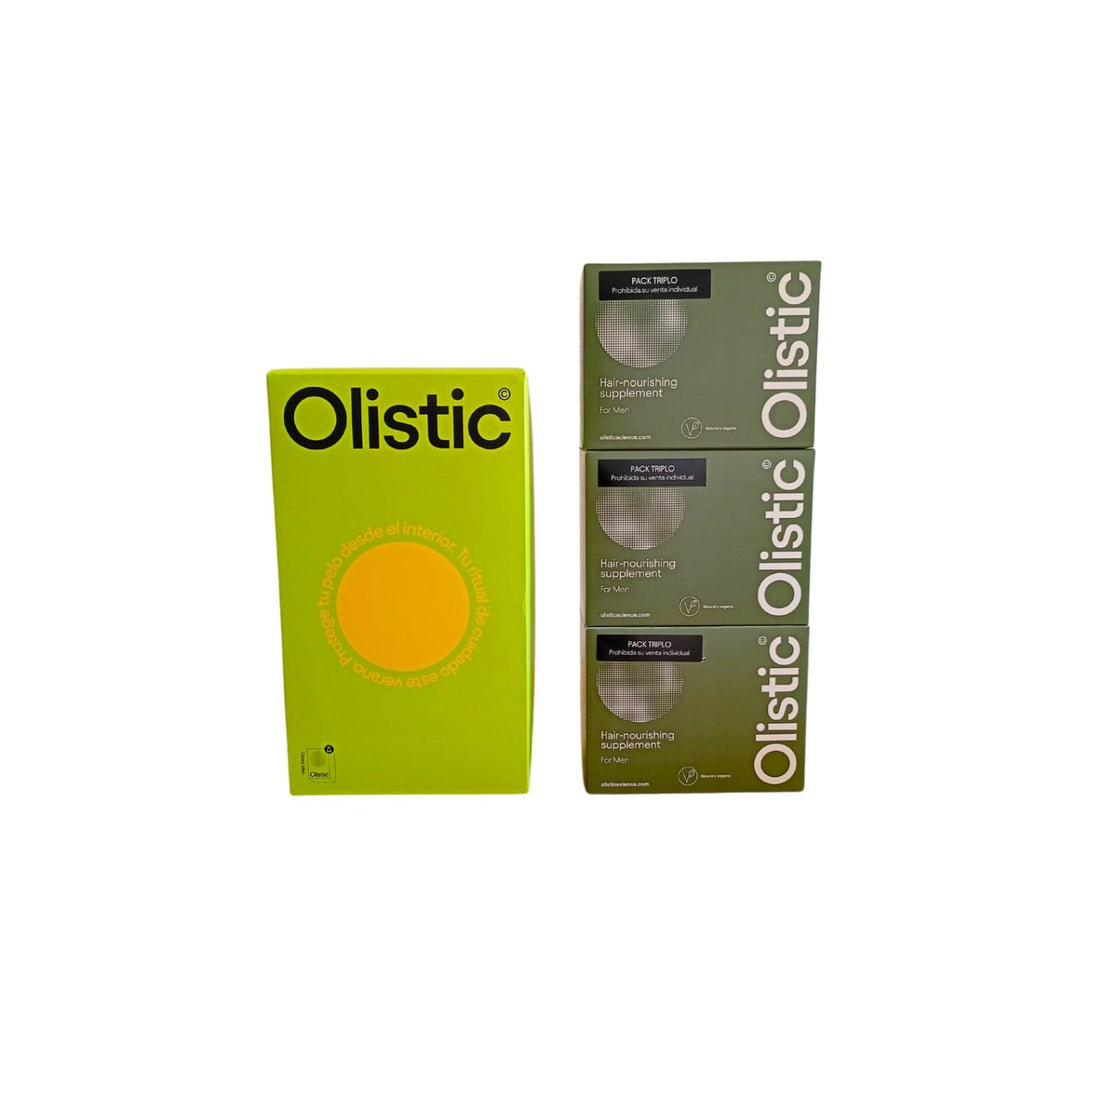 Olistic Man (3X28 dosis de 25 ml vial) Tratamiento Durante 3 Meses